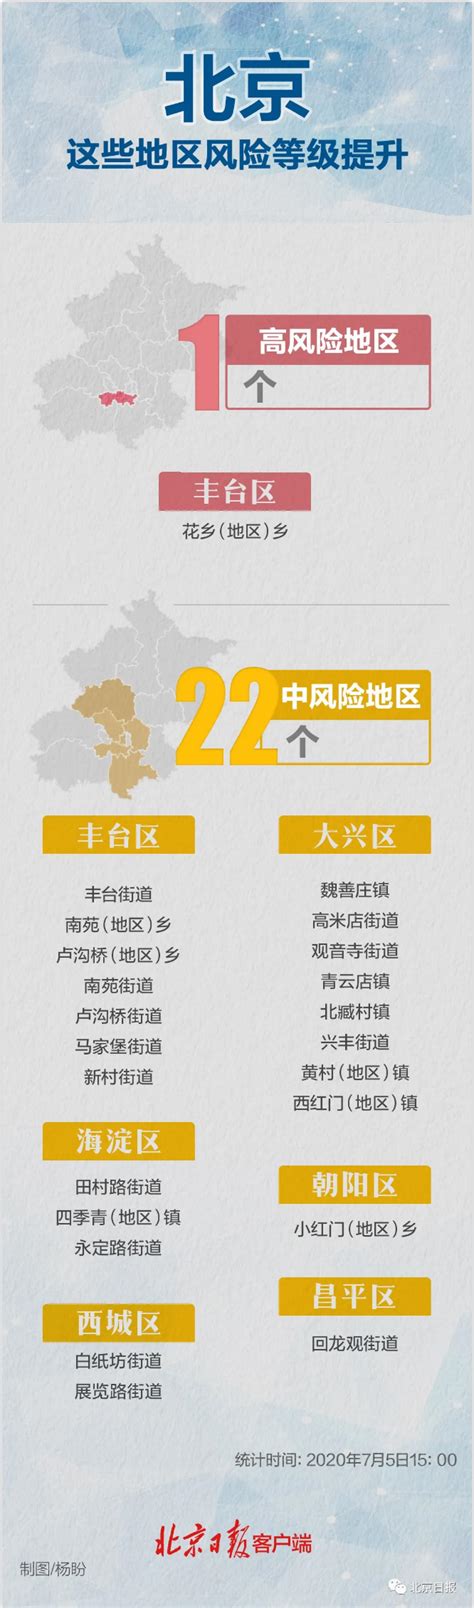 2022年5月13日北京中高风险地区最新名单- 北京本地宝